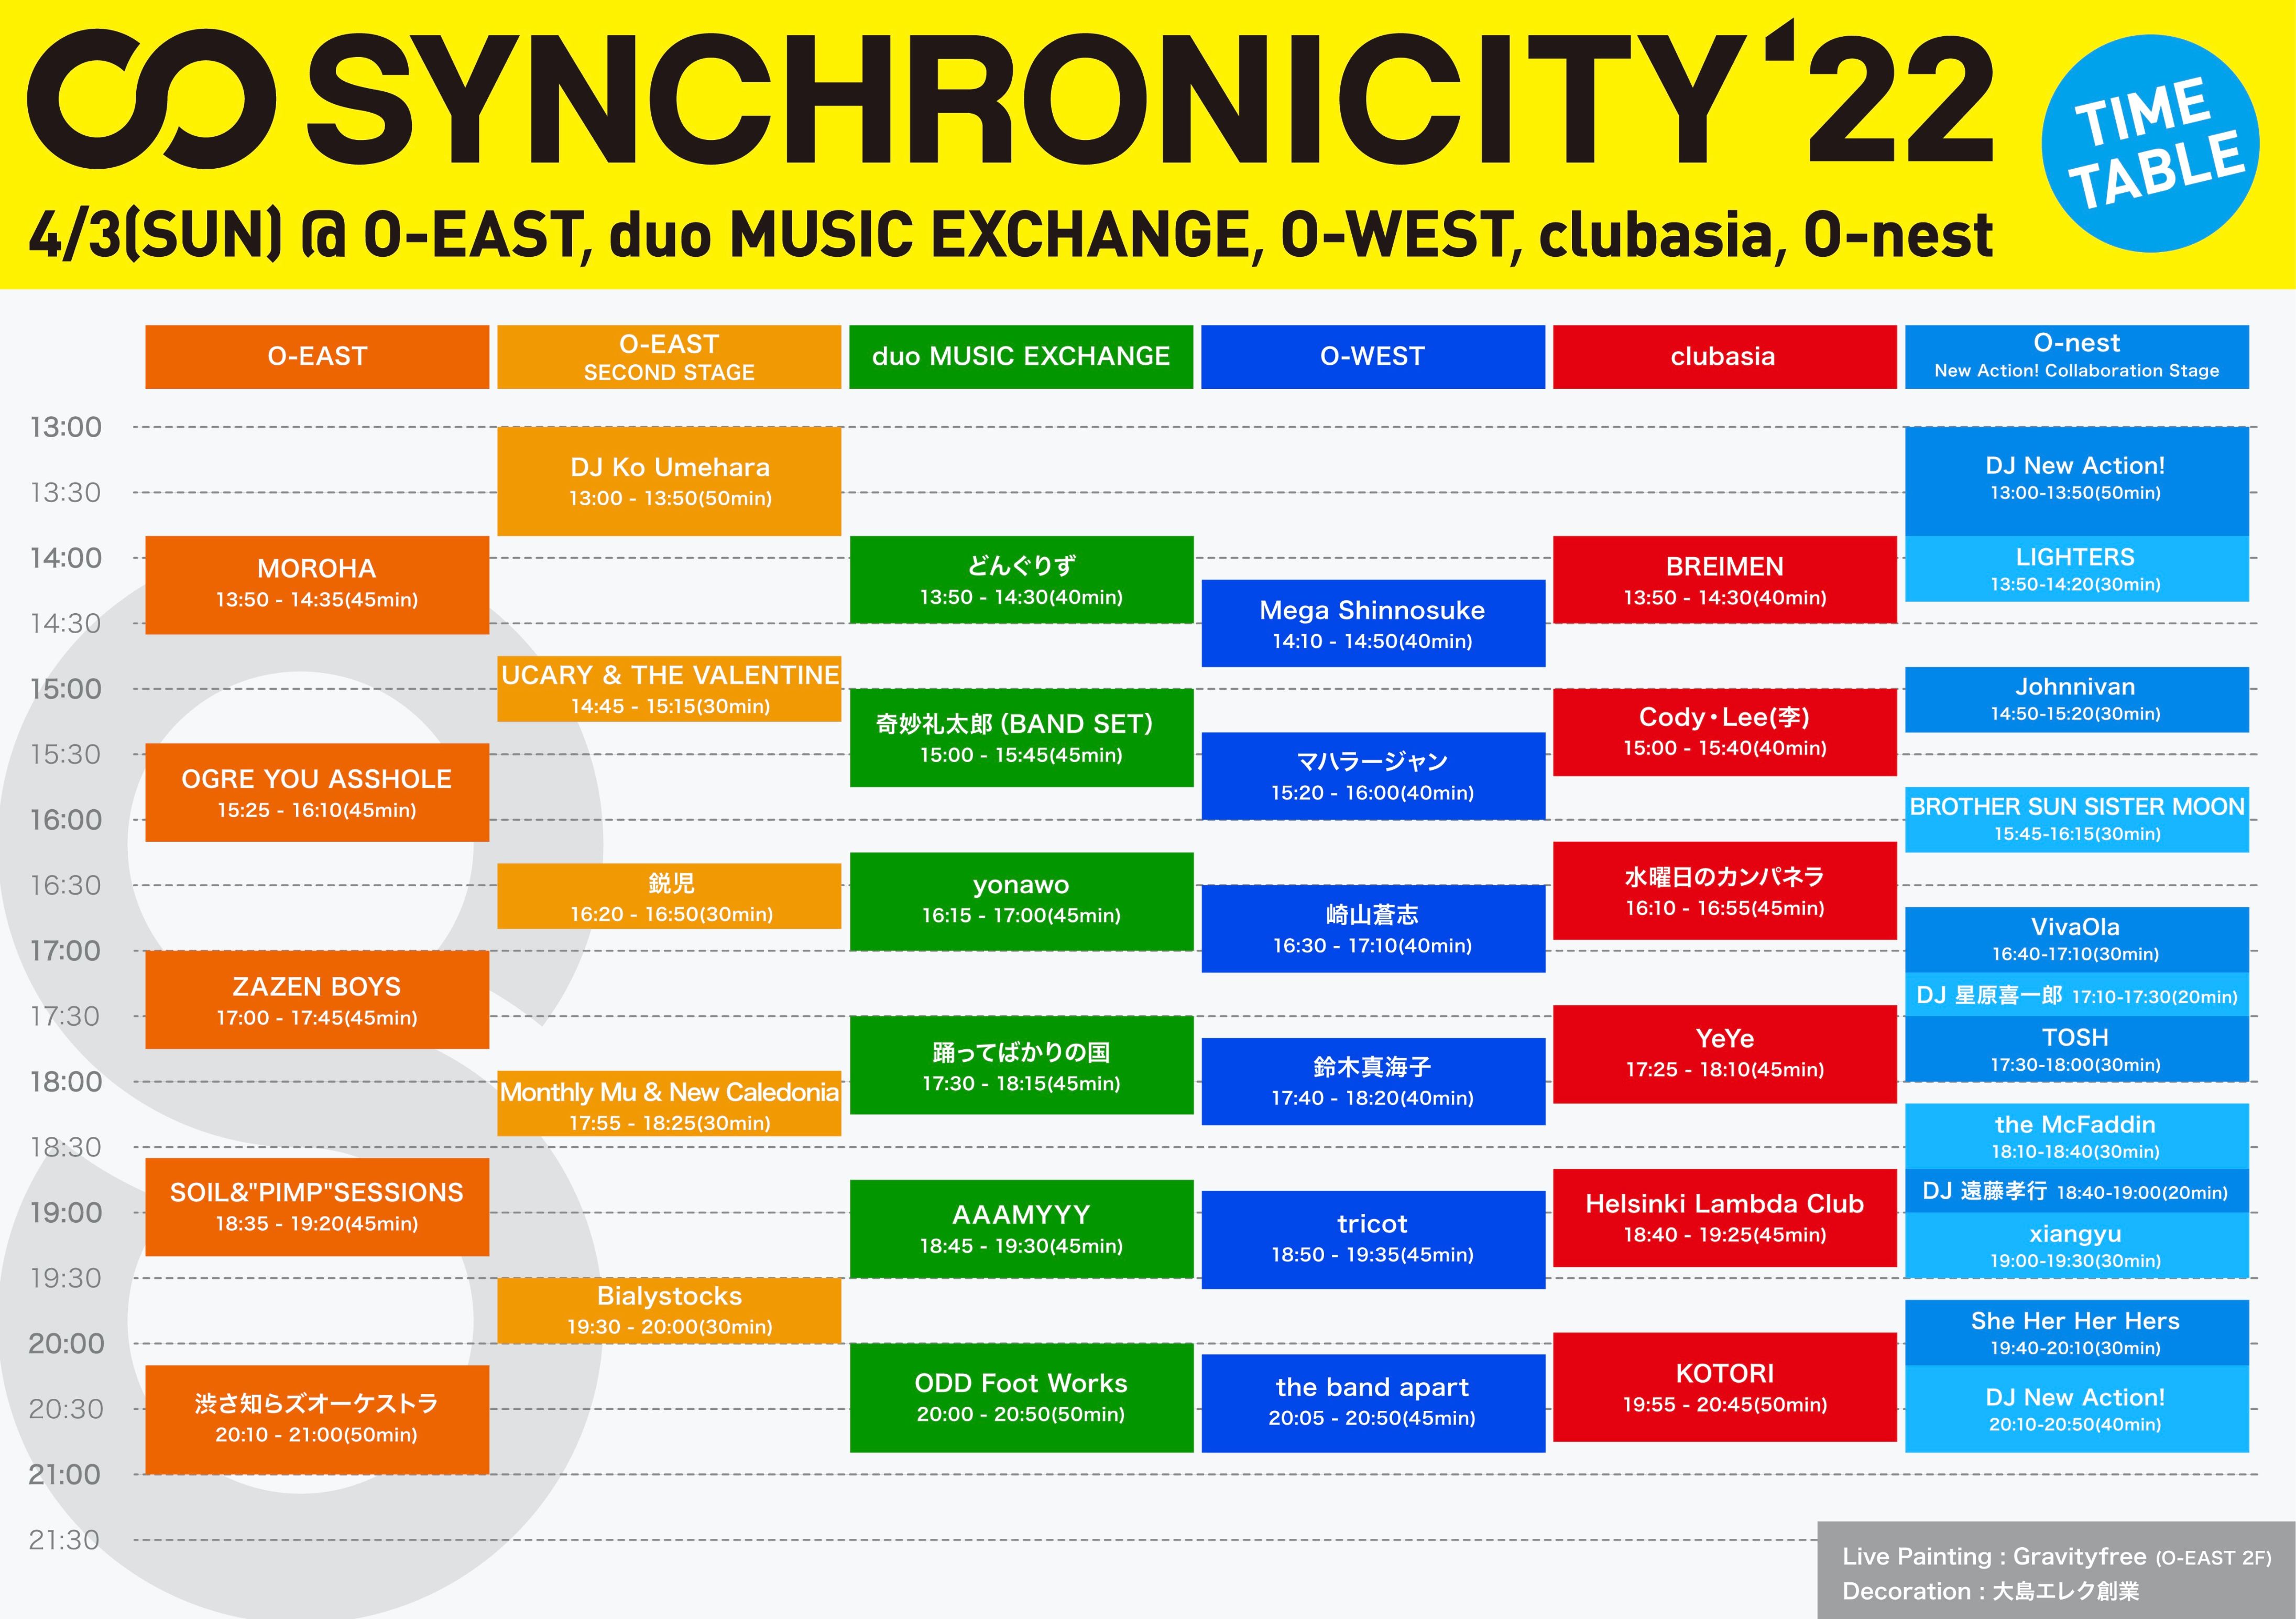 synchro22_timetable_220403_fix2